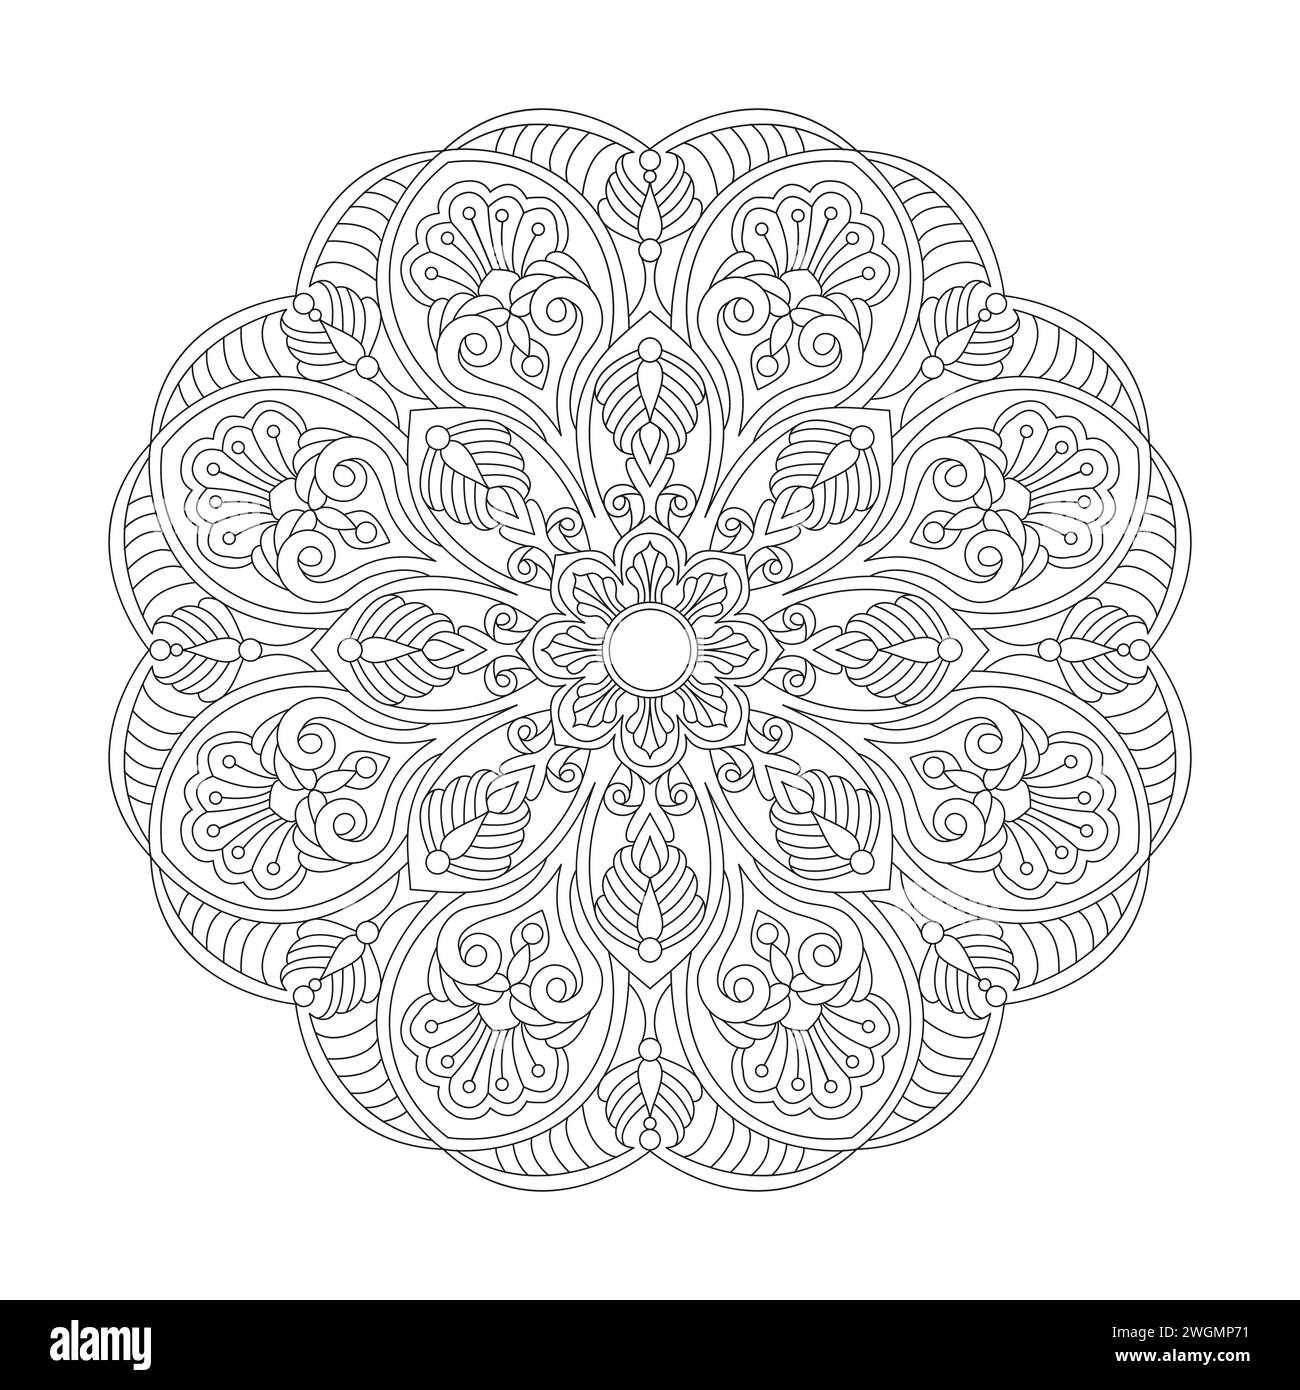 Attraktive schöne Mandala Malbuchseite für kdp Book Interior. Friedliche Blütenblätter, Fähigkeit zum Entspannen, Gehirnerlebnisse, harmonischer Hafen, Peacef Stock Vektor